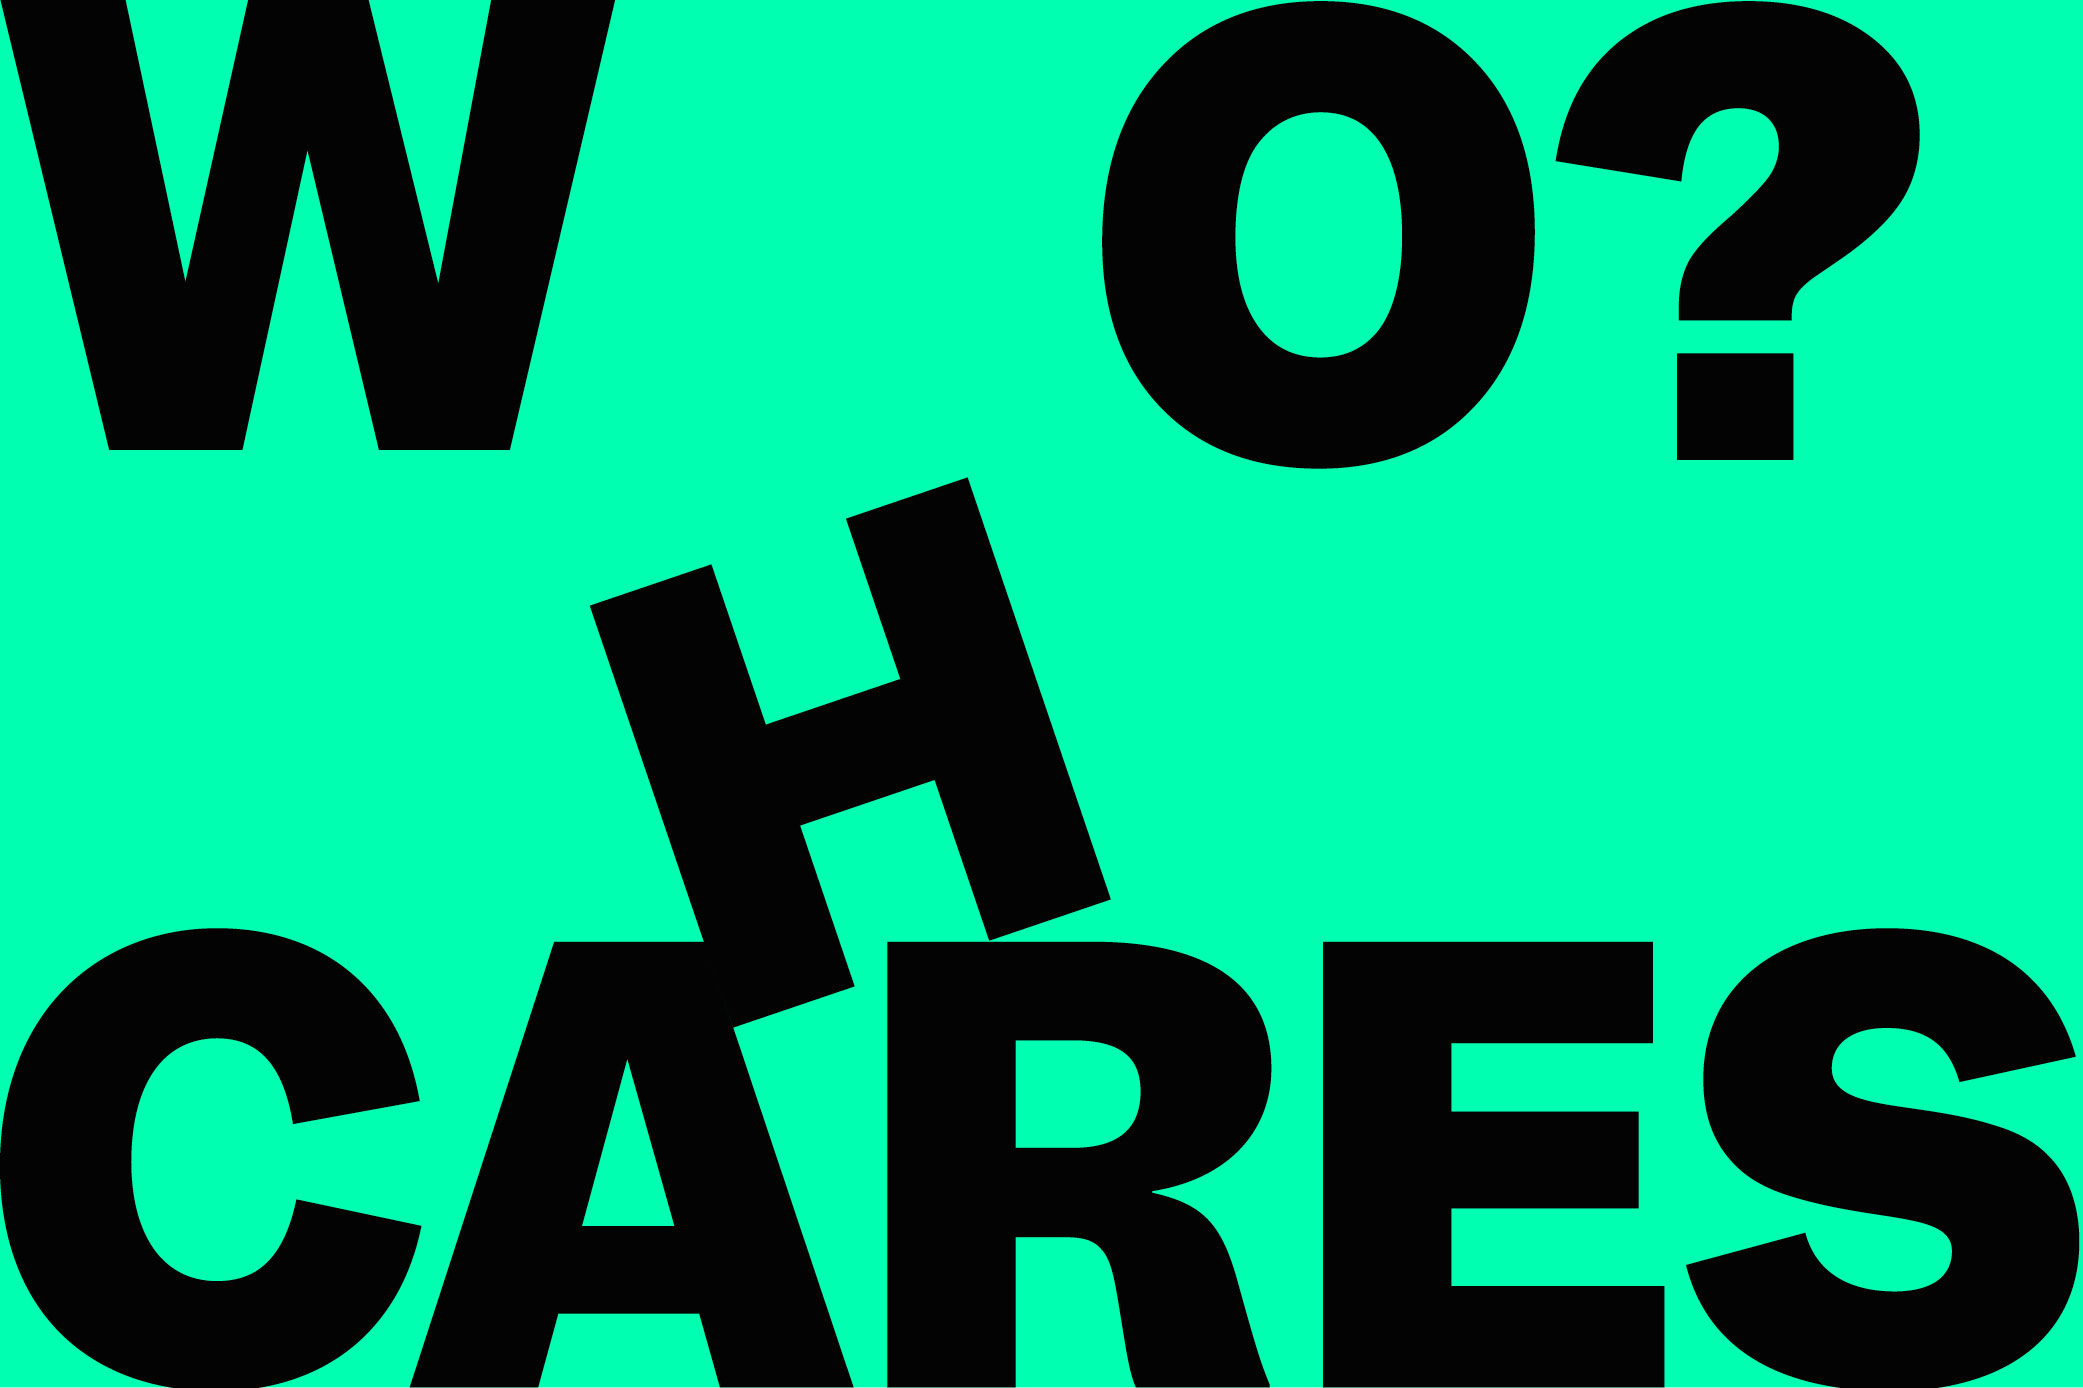 WhoCares-Logo-500x333px